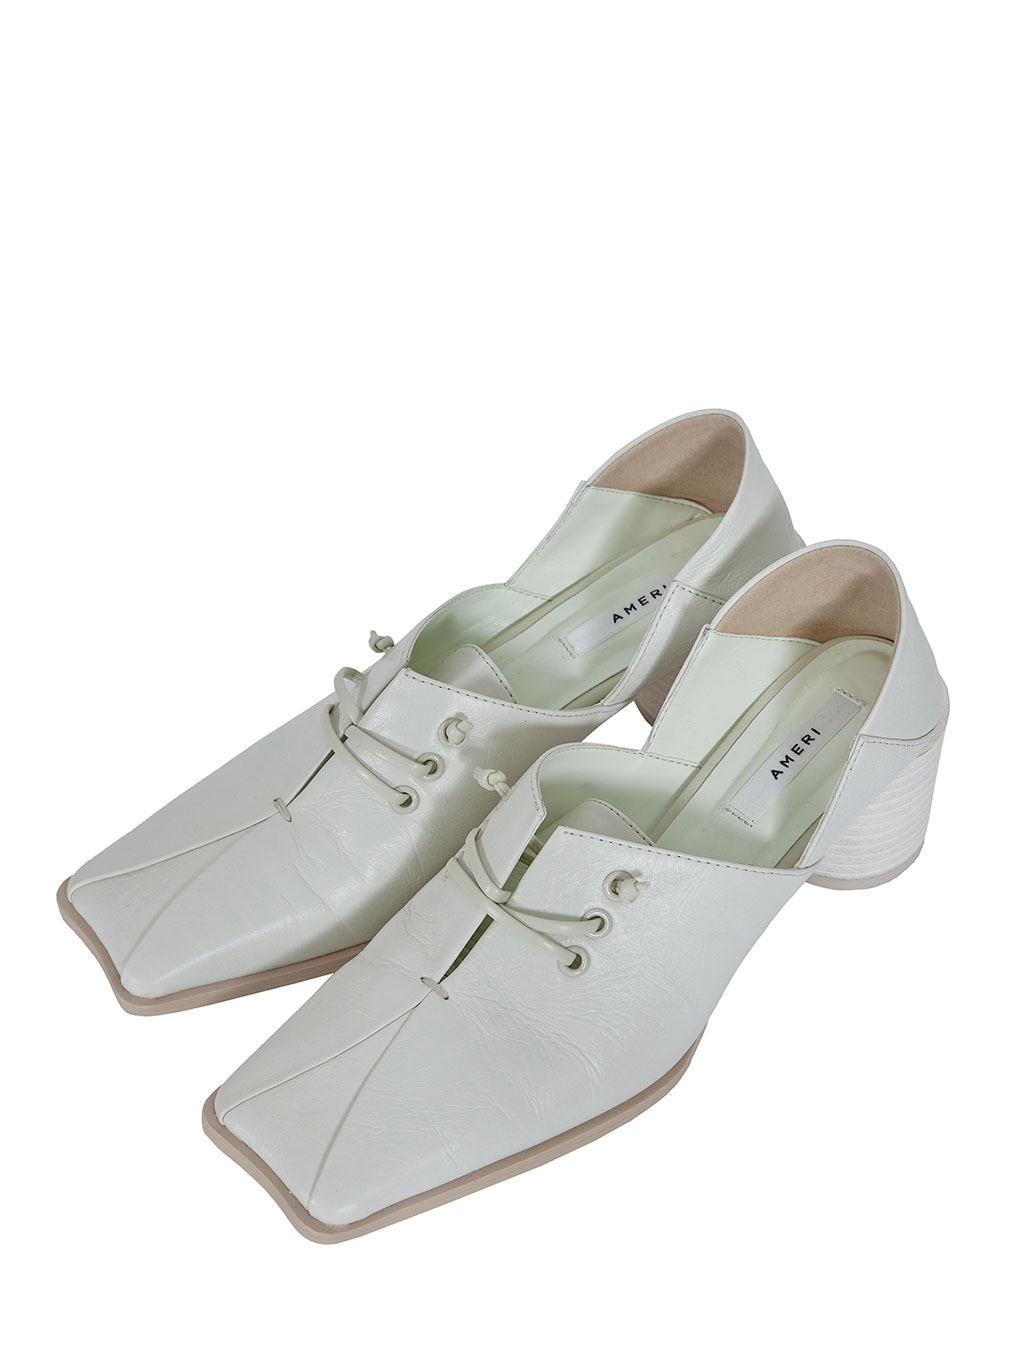 売れ筋新商品 【ameri vintage】und loafers square 2way - ローファー/革靴